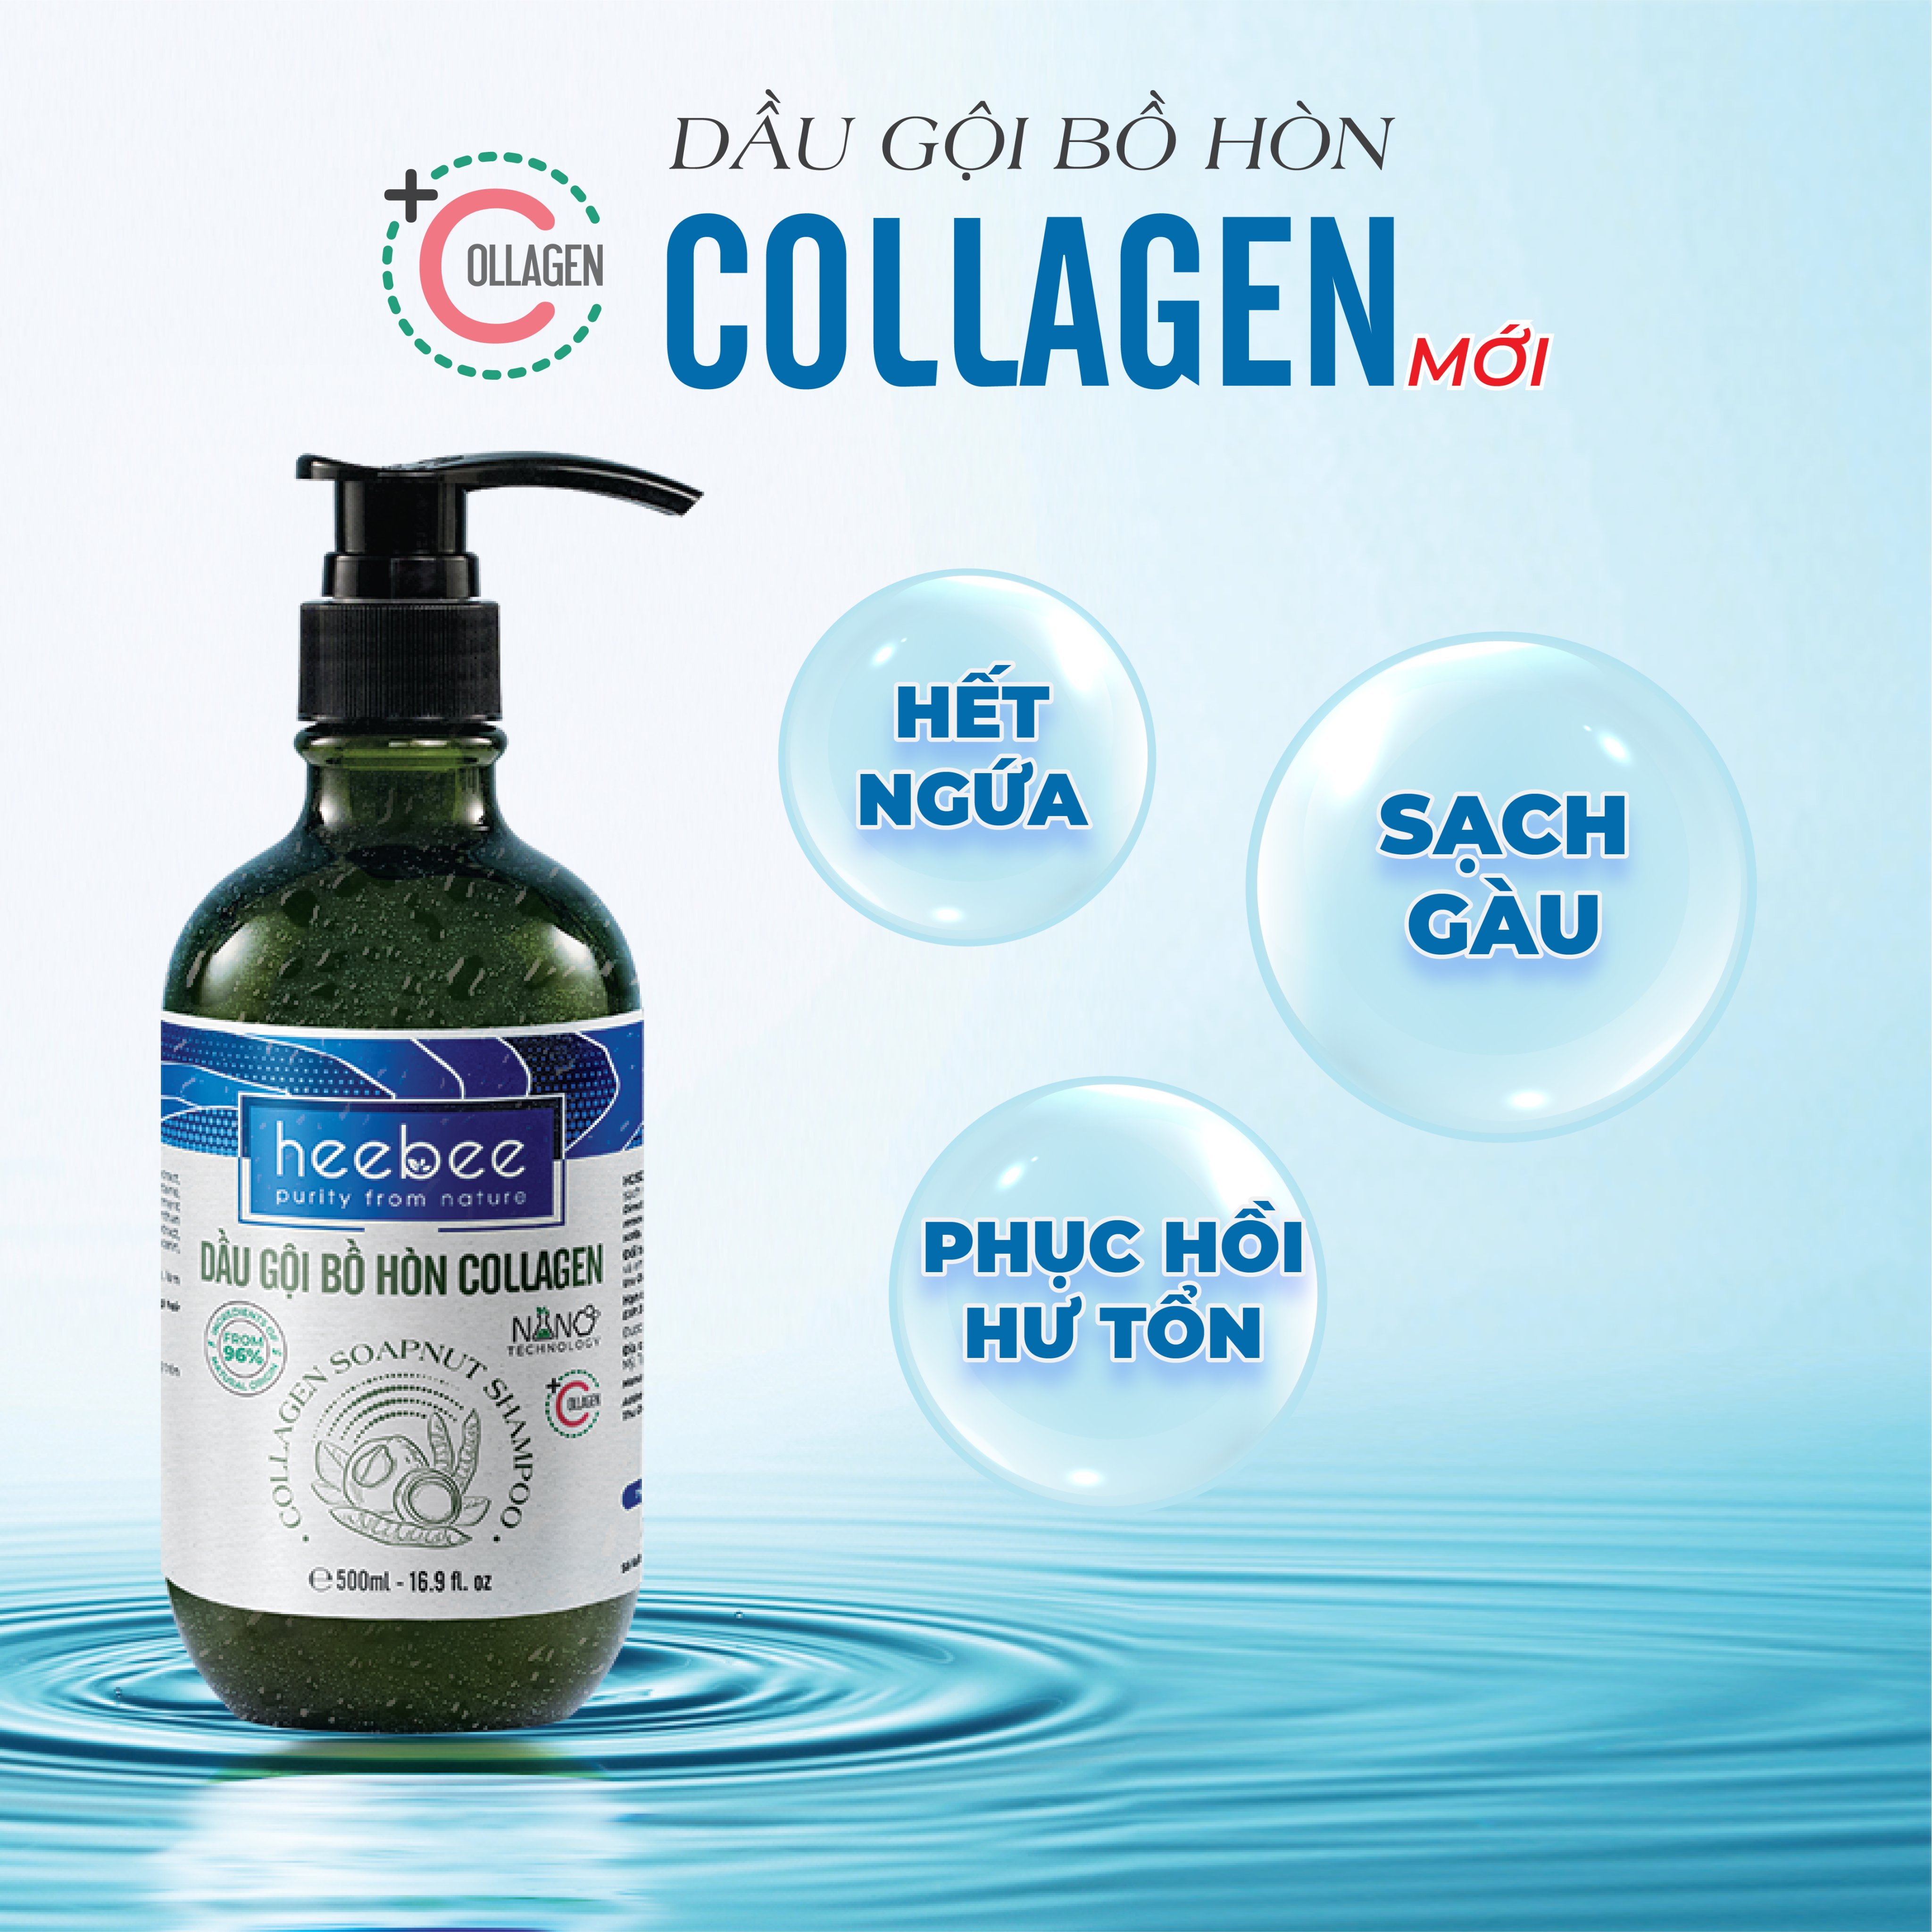 Dầu gội Bồ Hòn Collagen phục hồi tóc hư tổn, ngăn gàu, giảm ngứa - Soapnut Shampoo - Hương Thảo Nguyên 500ml